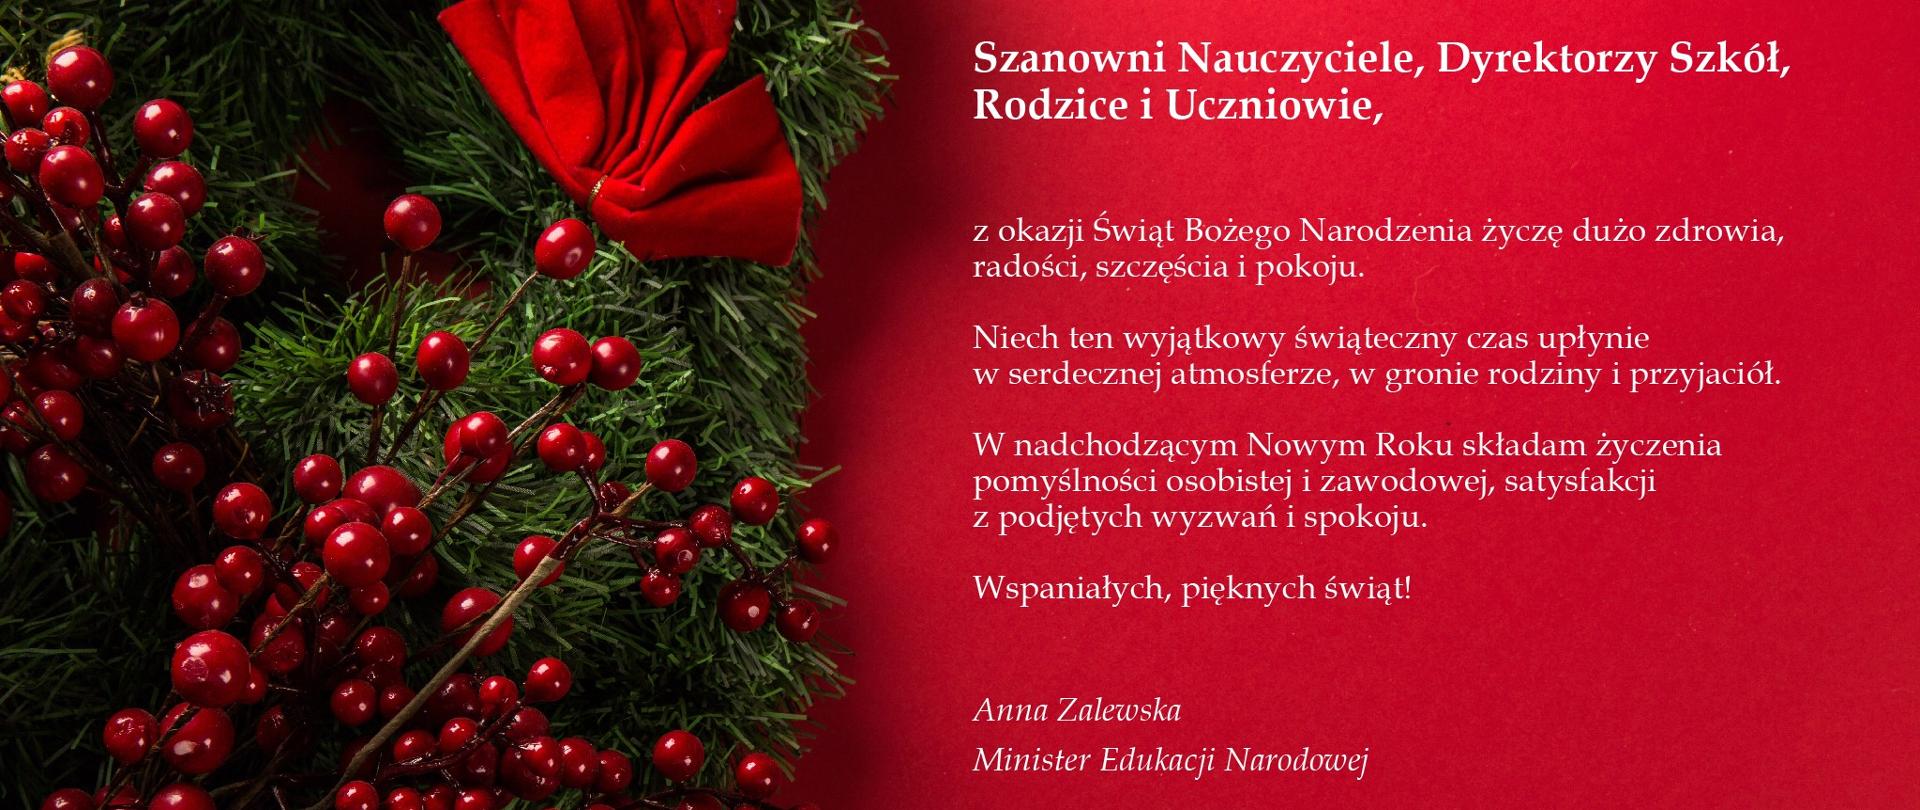 Życzenia Minister Edukacji Narodowej z okazji Świąt Bożego Narodzenia i Nowego Roku